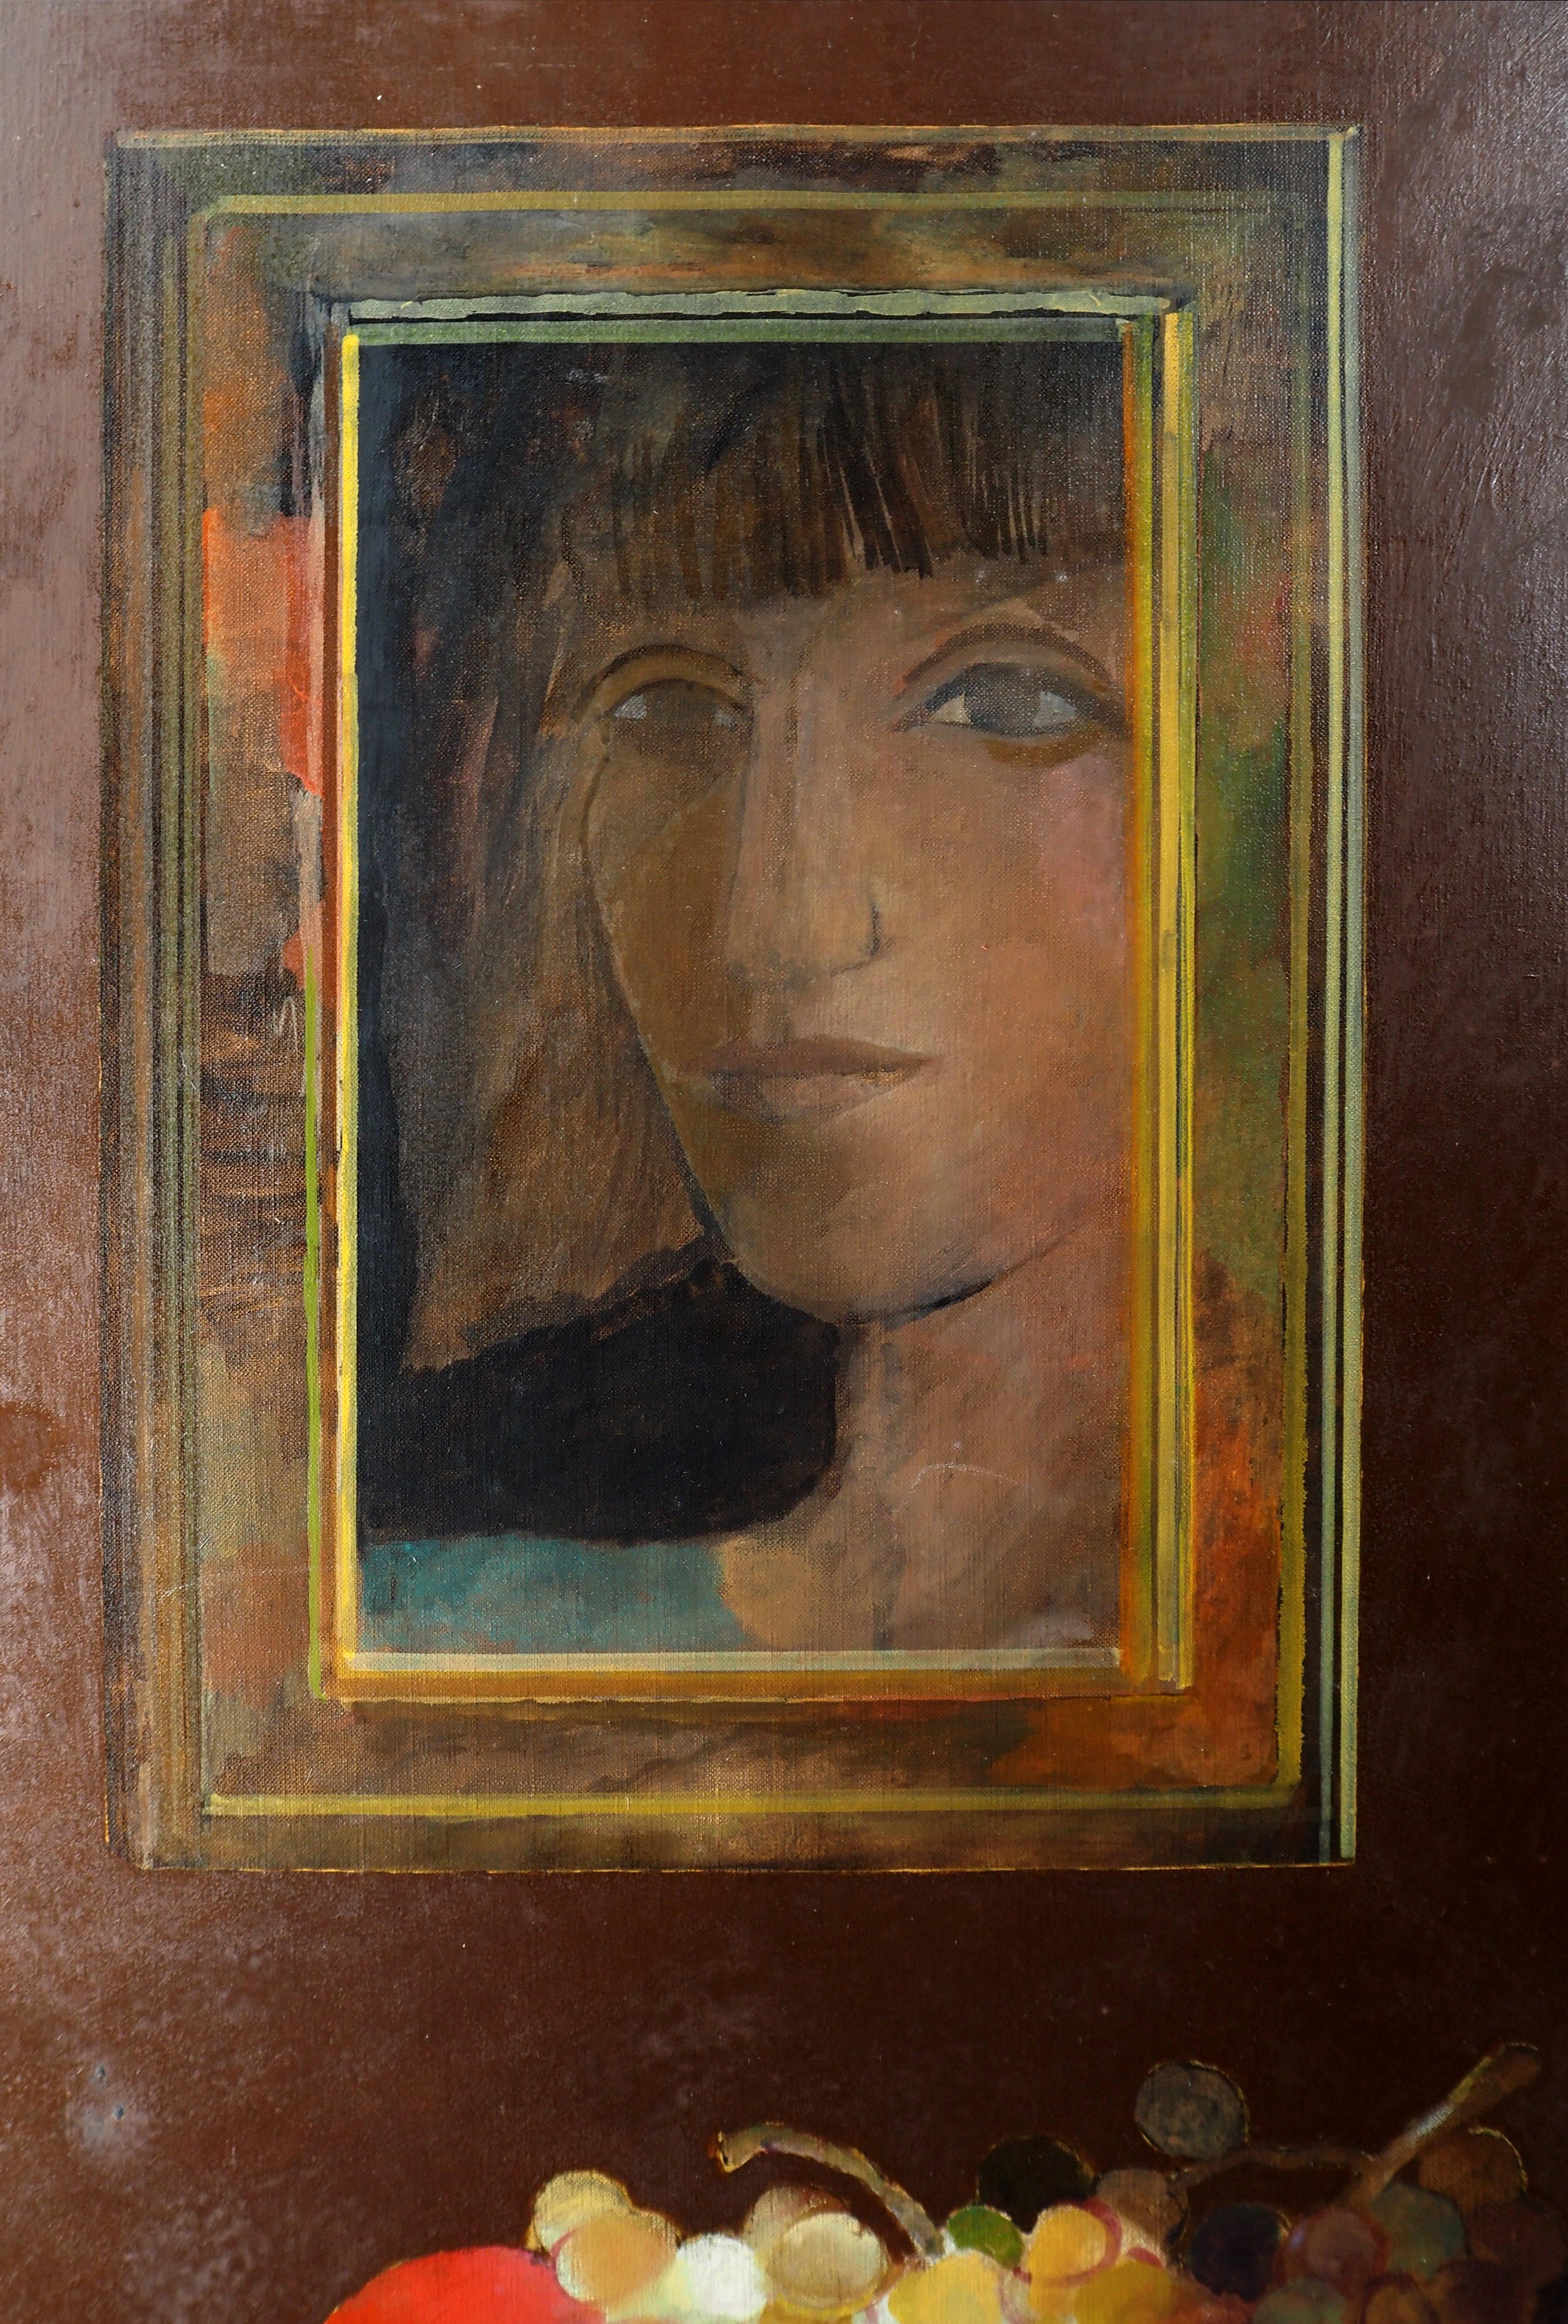 Porträt : Obst und Spiegel - Original Öl auf Leinwand, Signiert  (Post-Impressionismus), Painting, von Pierre Garcia Fons